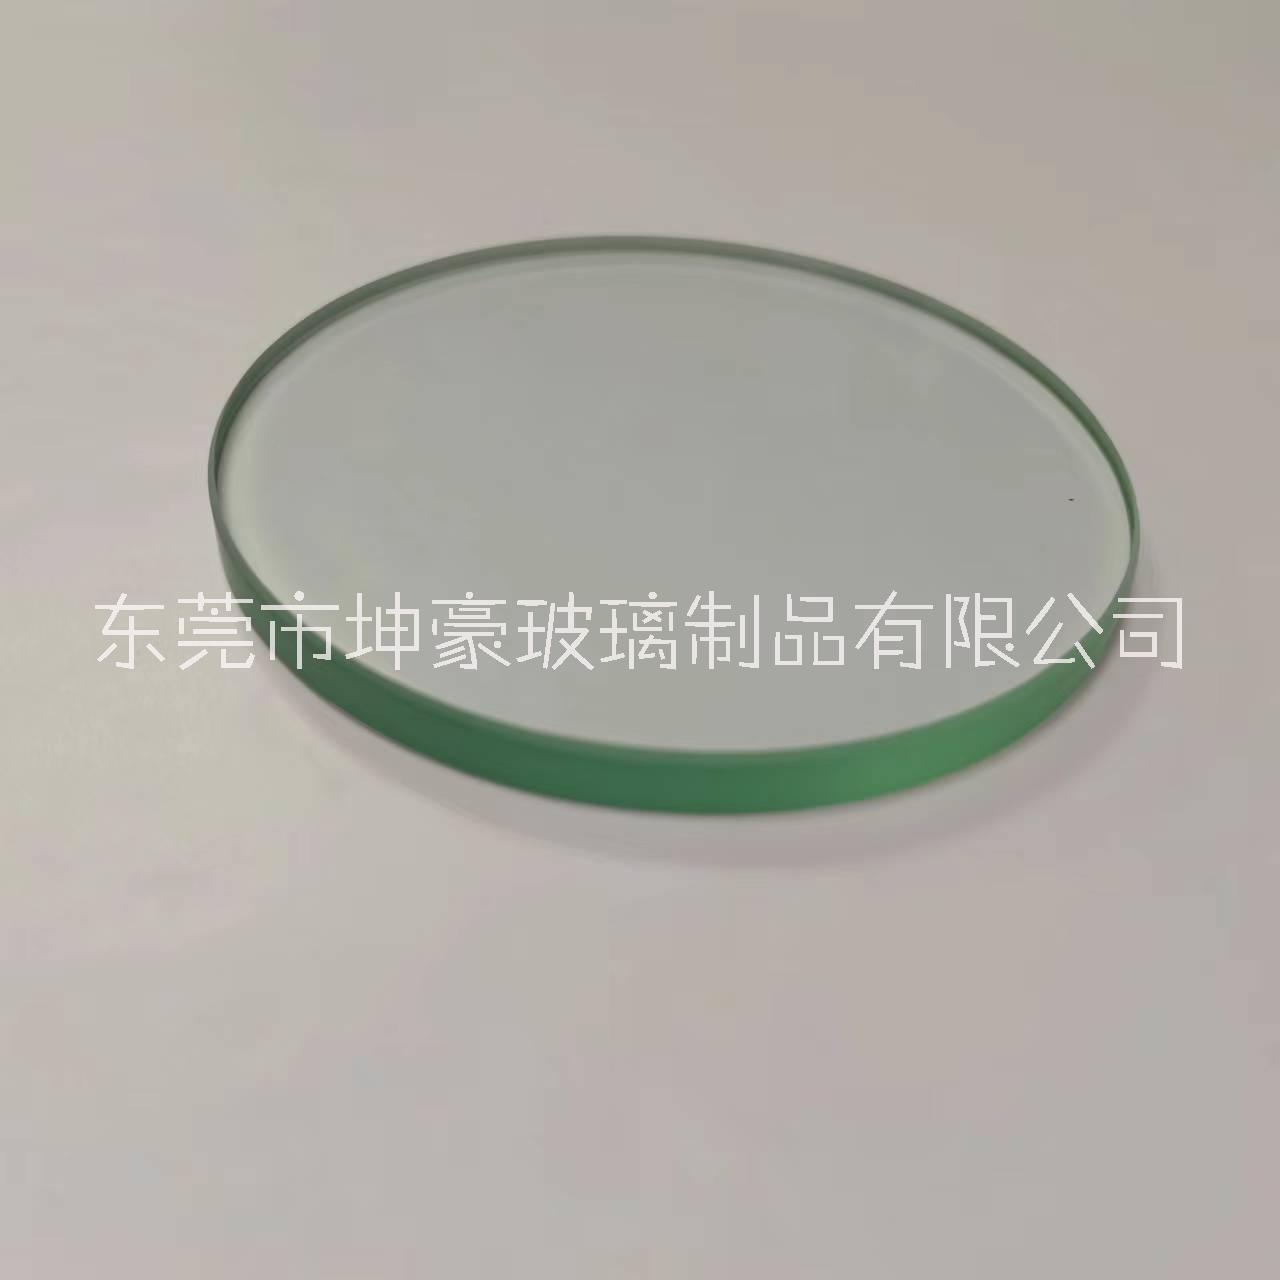 东莞玻璃加工厂 6mm超白玻璃 灯具超白玻璃透明钢化 可按规格需求